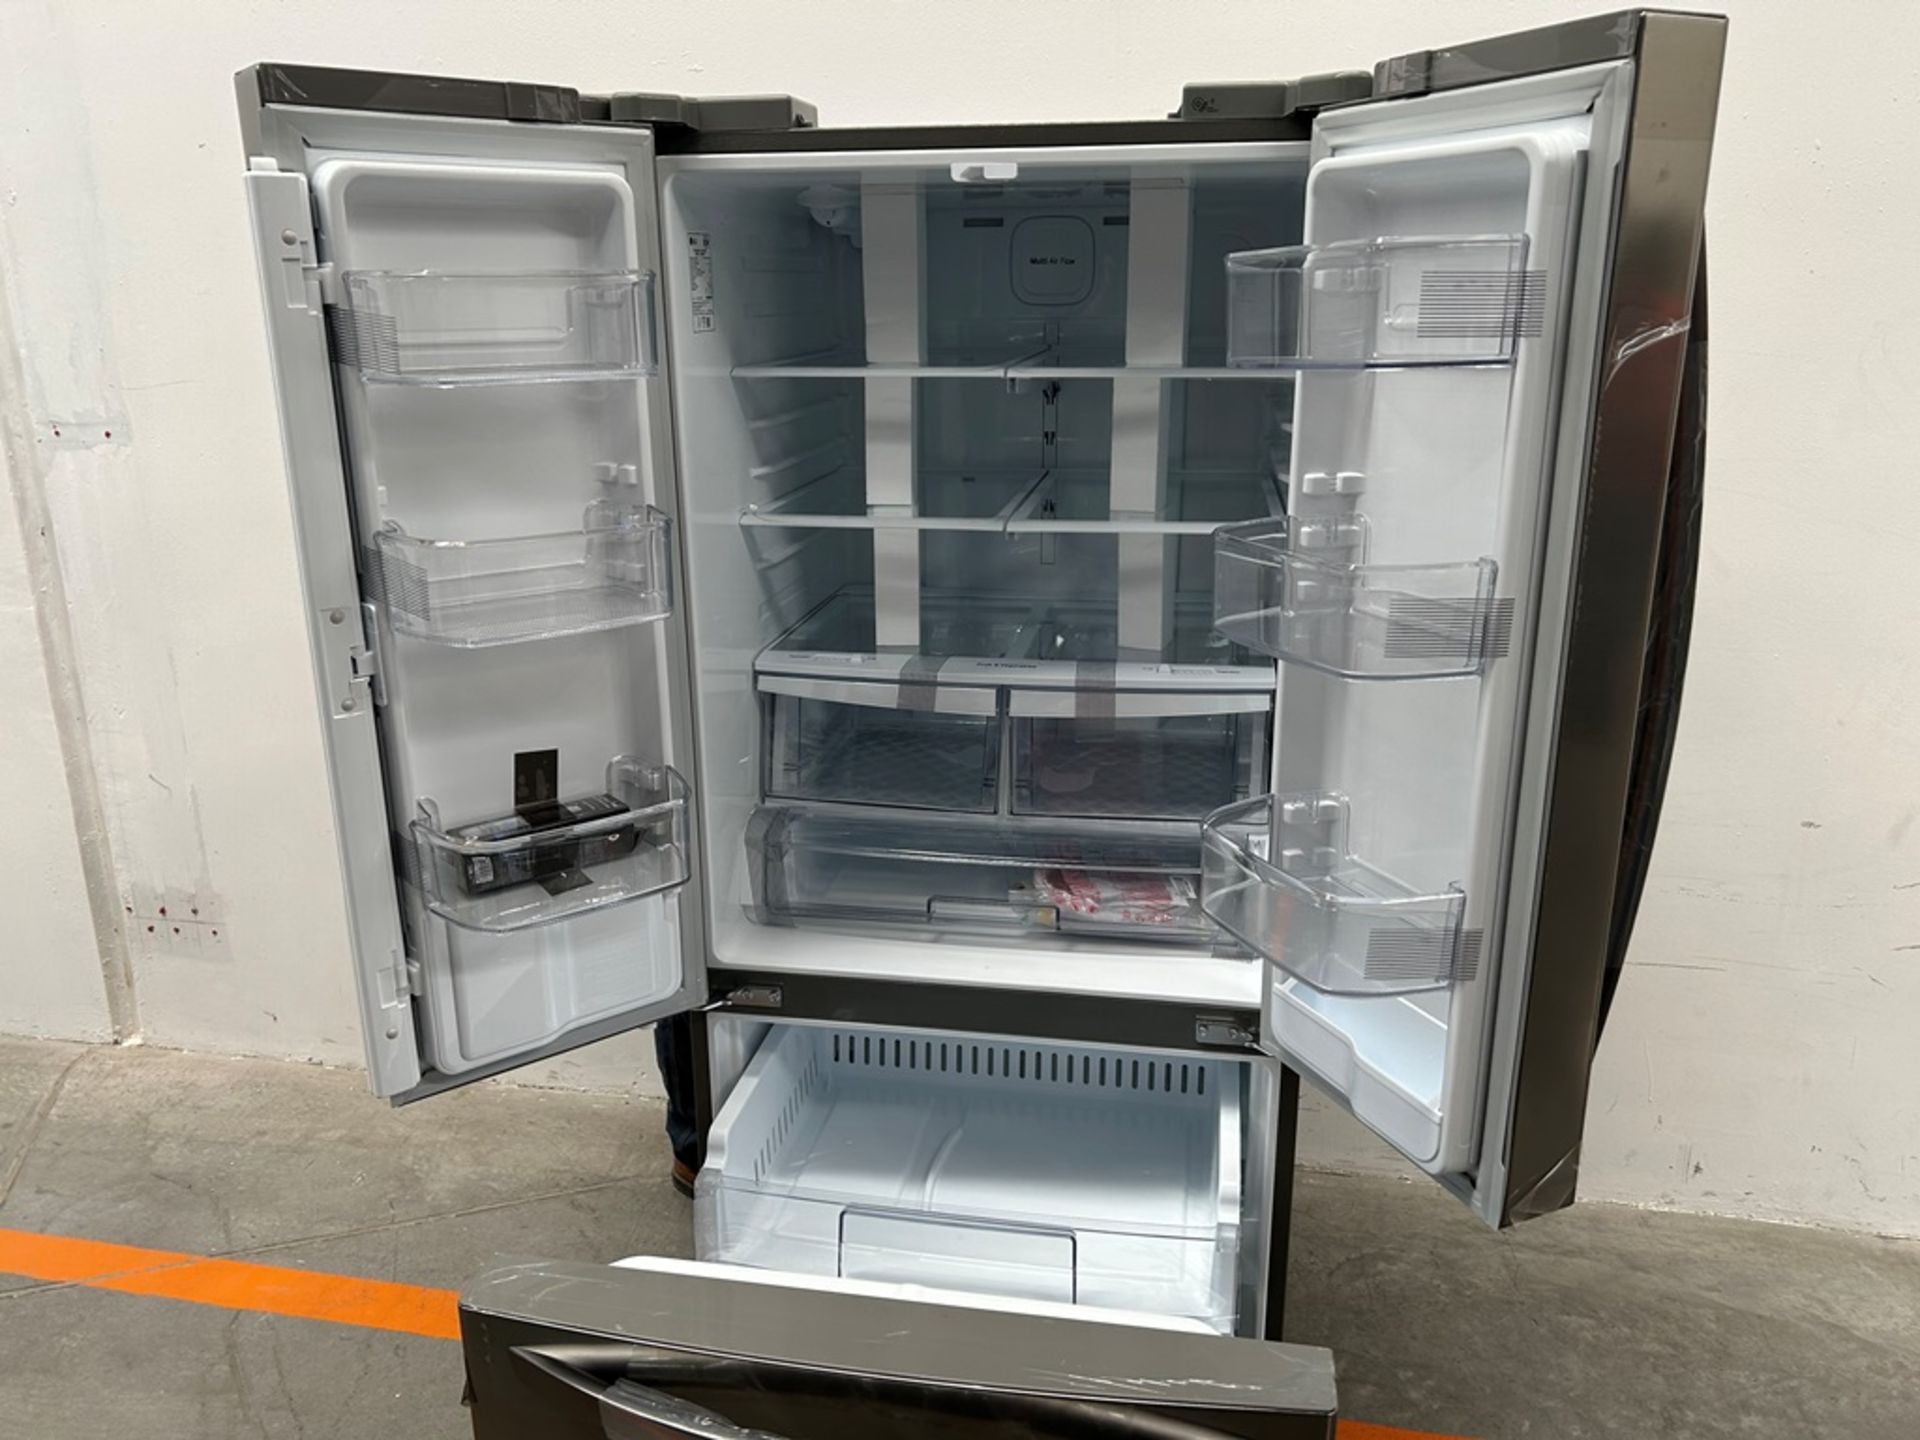 (NUEVO) Refrigerador con dispensador de agua Marca LG, Modelo GM22SGPK, Serie 28061, Color GRIS - Bild 4 aus 11